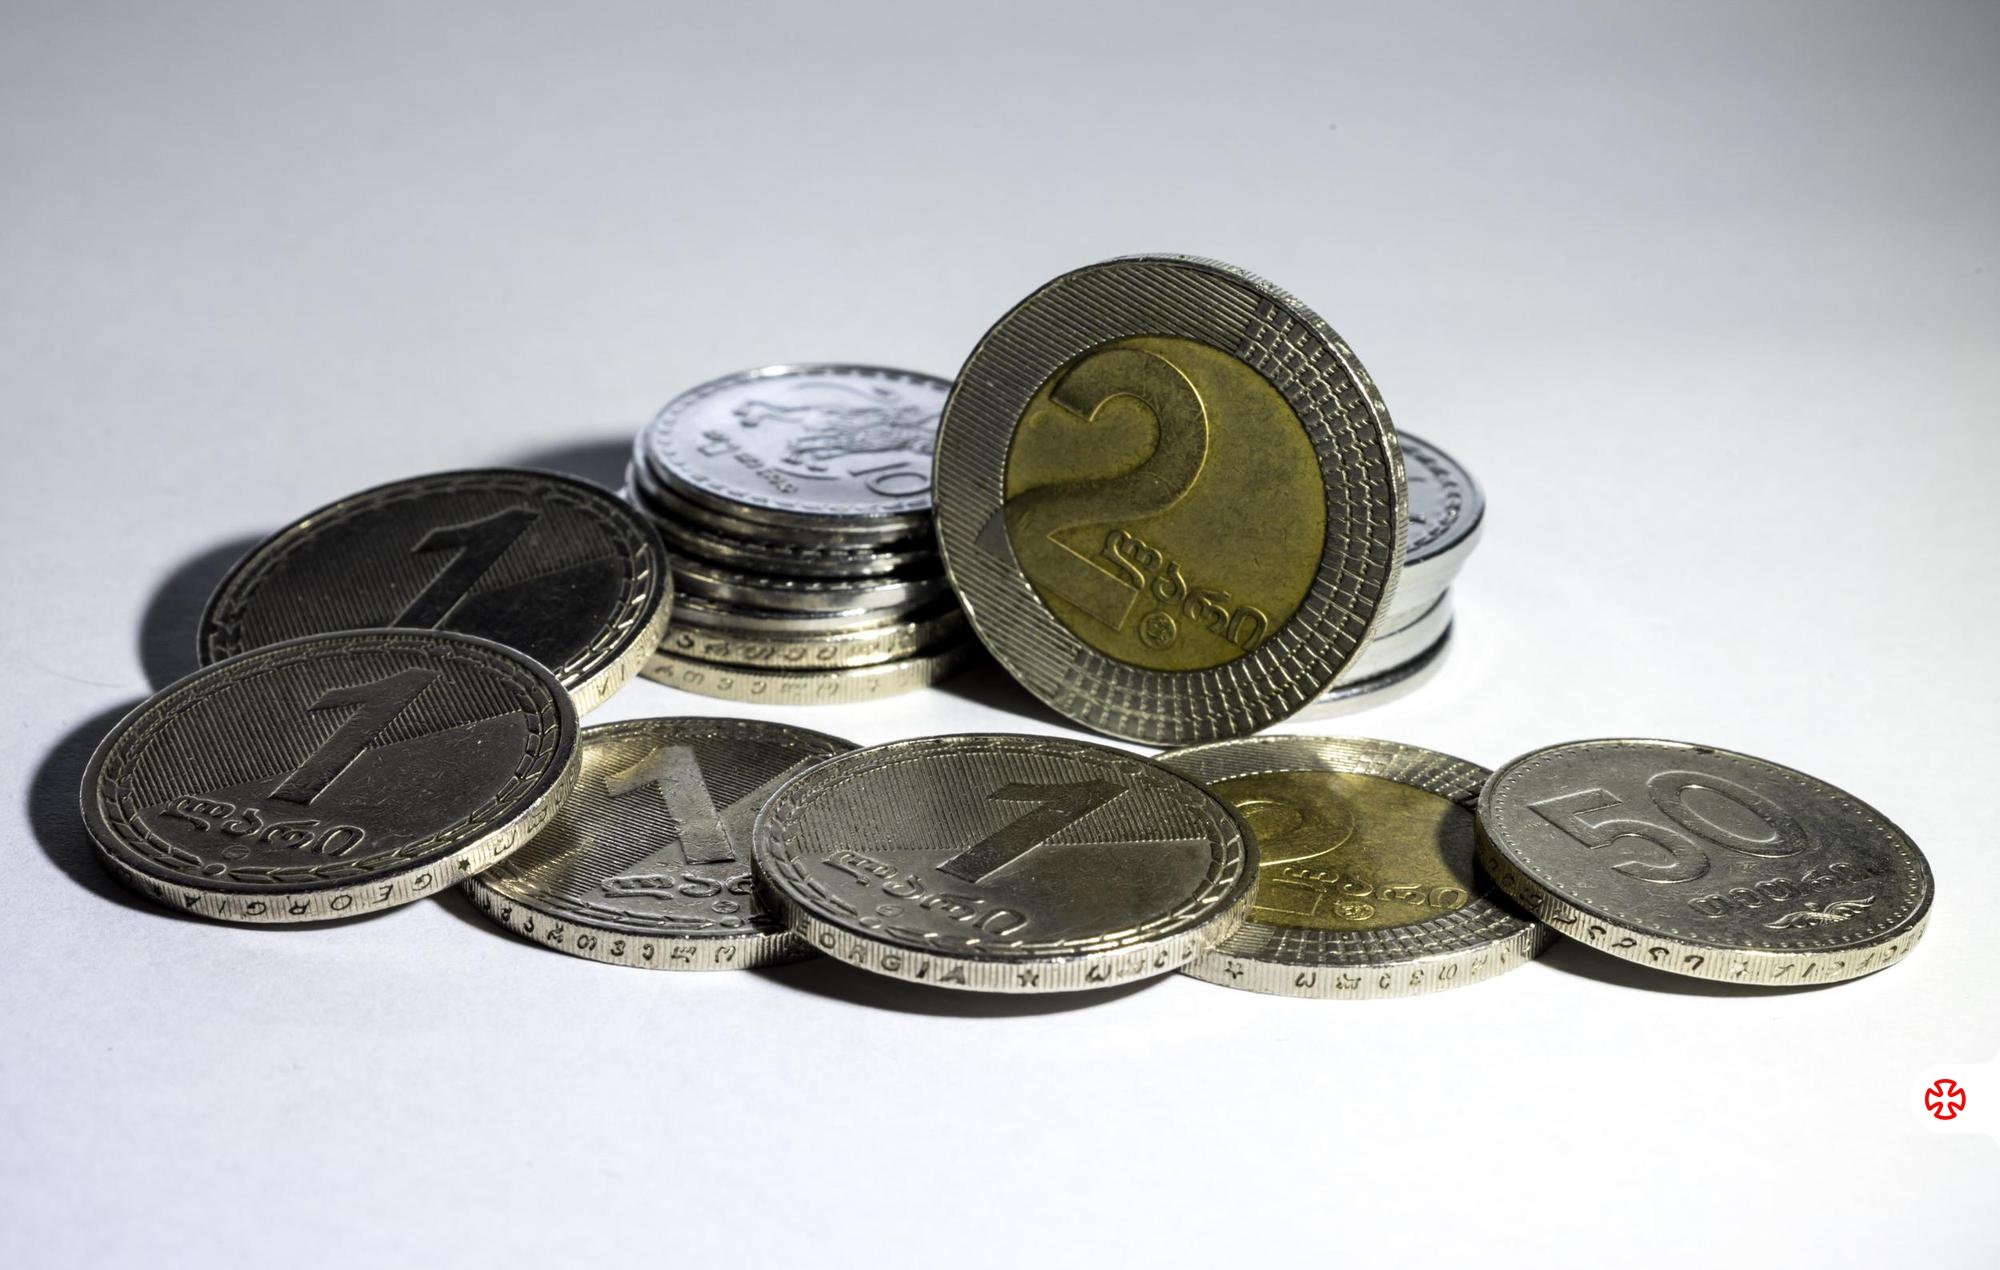 Georgian Coins